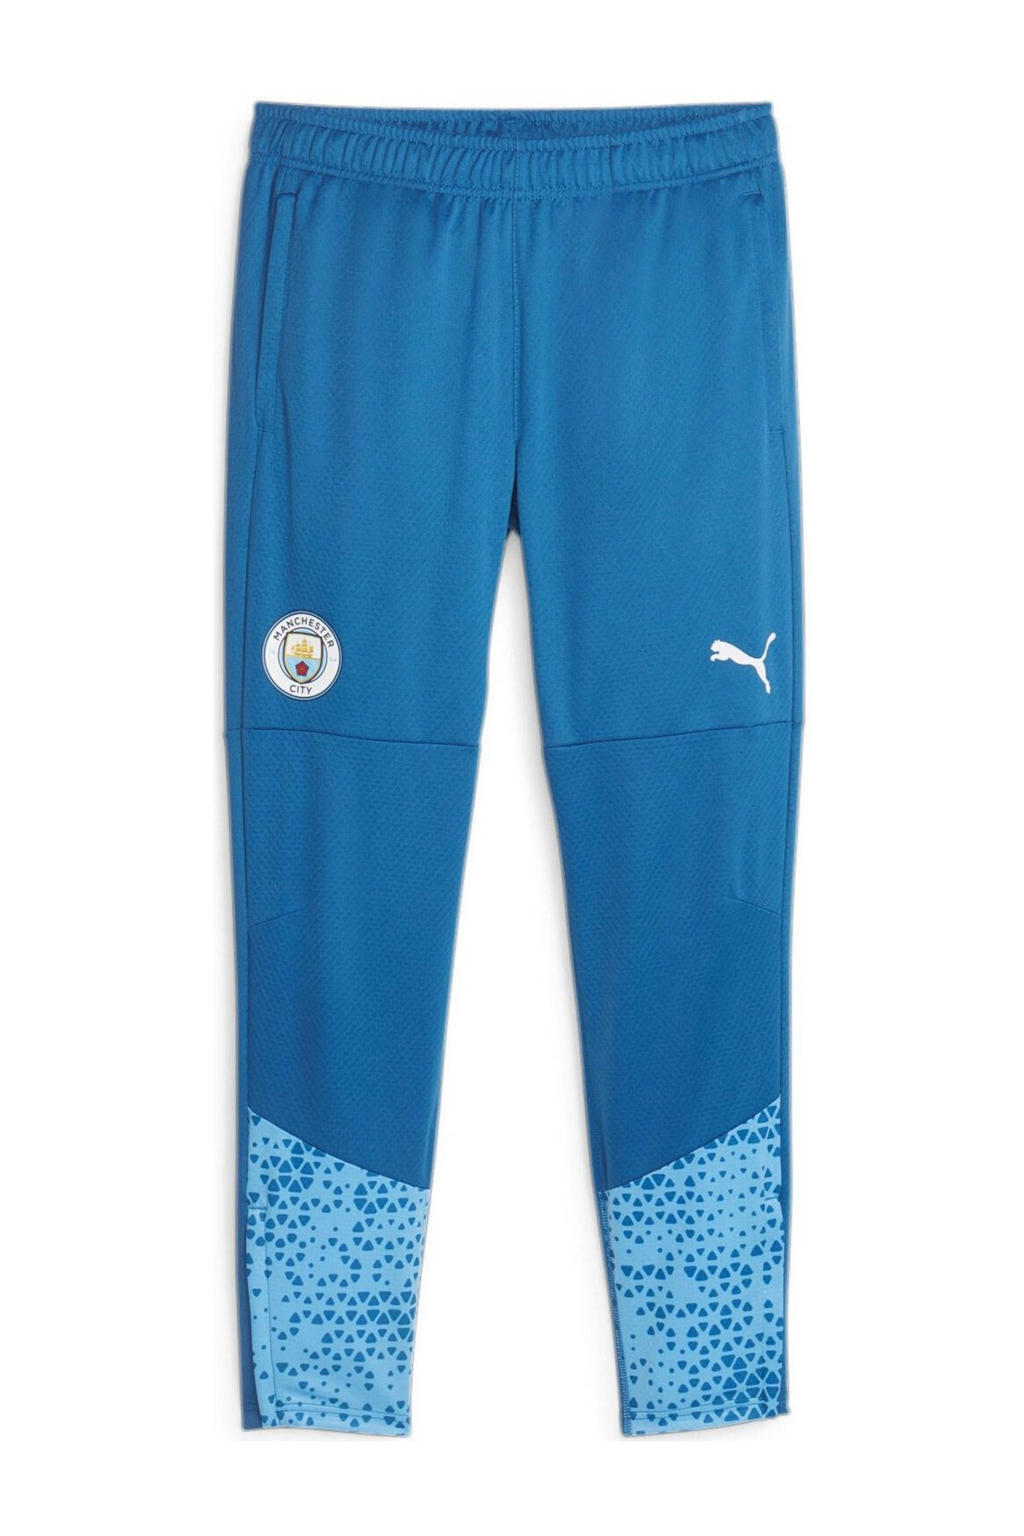 Blauwe heren Puma Senior Manchester City voetbalbroek van polyester met regular fit, elastische tailleband met koord en logo dessin